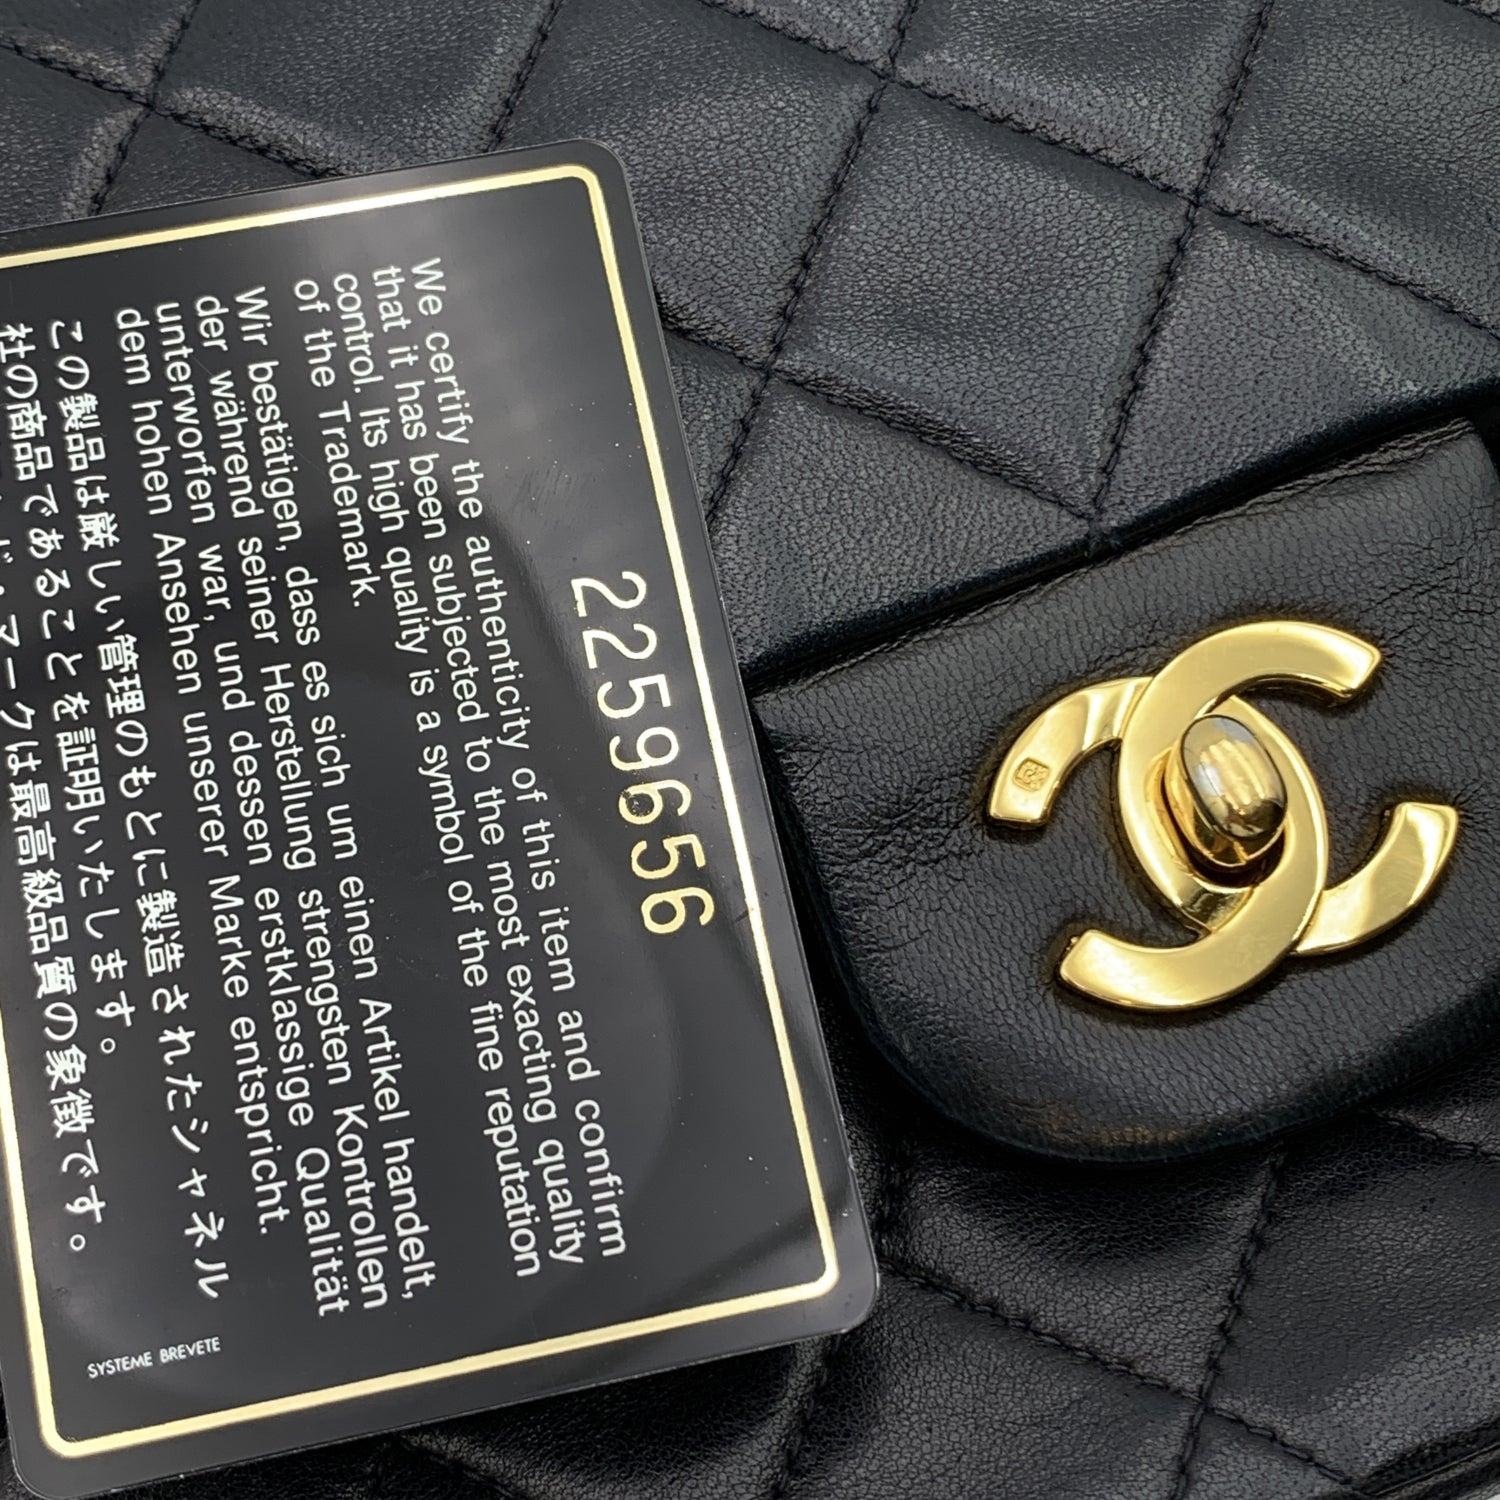 Chanel Vintage Black Quilted Timeless Classic 2.55 Shoulder Bag 25 cm 2